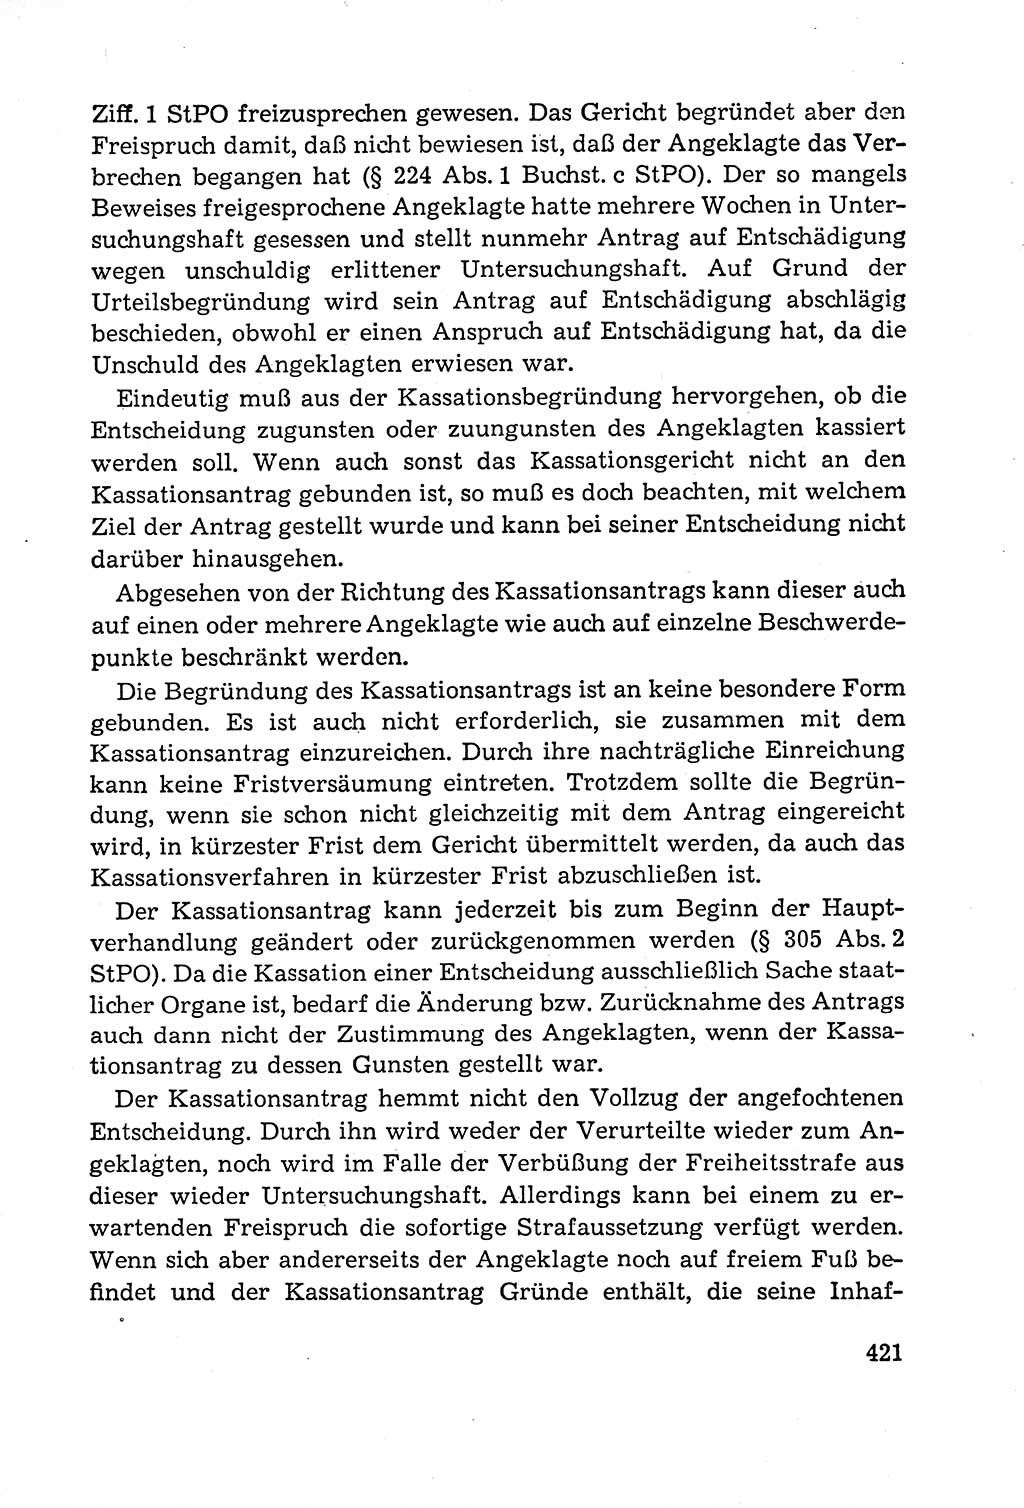 Leitfaden des Strafprozeßrechts der Deutschen Demokratischen Republik (DDR) 1959, Seite 421 (LF StPR DDR 1959, S. 421)